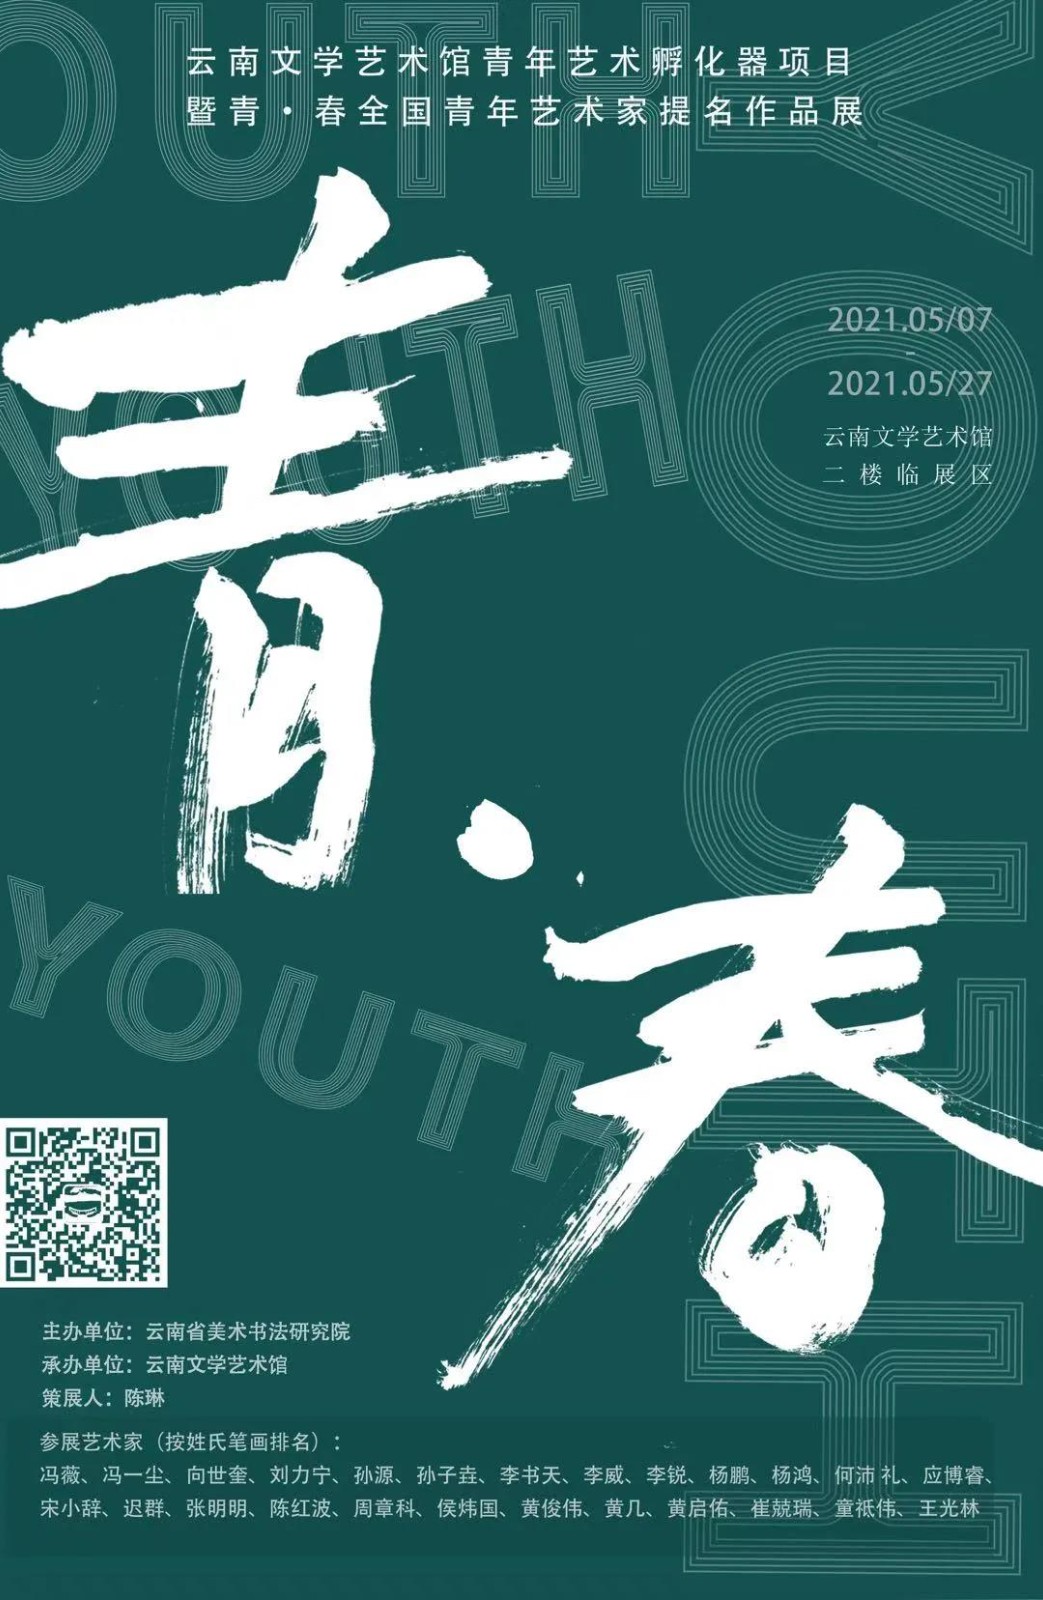 云南文学艺术馆青年艺术孵化器项目 暨青·春全国青年艺术家提名作品展即将开展